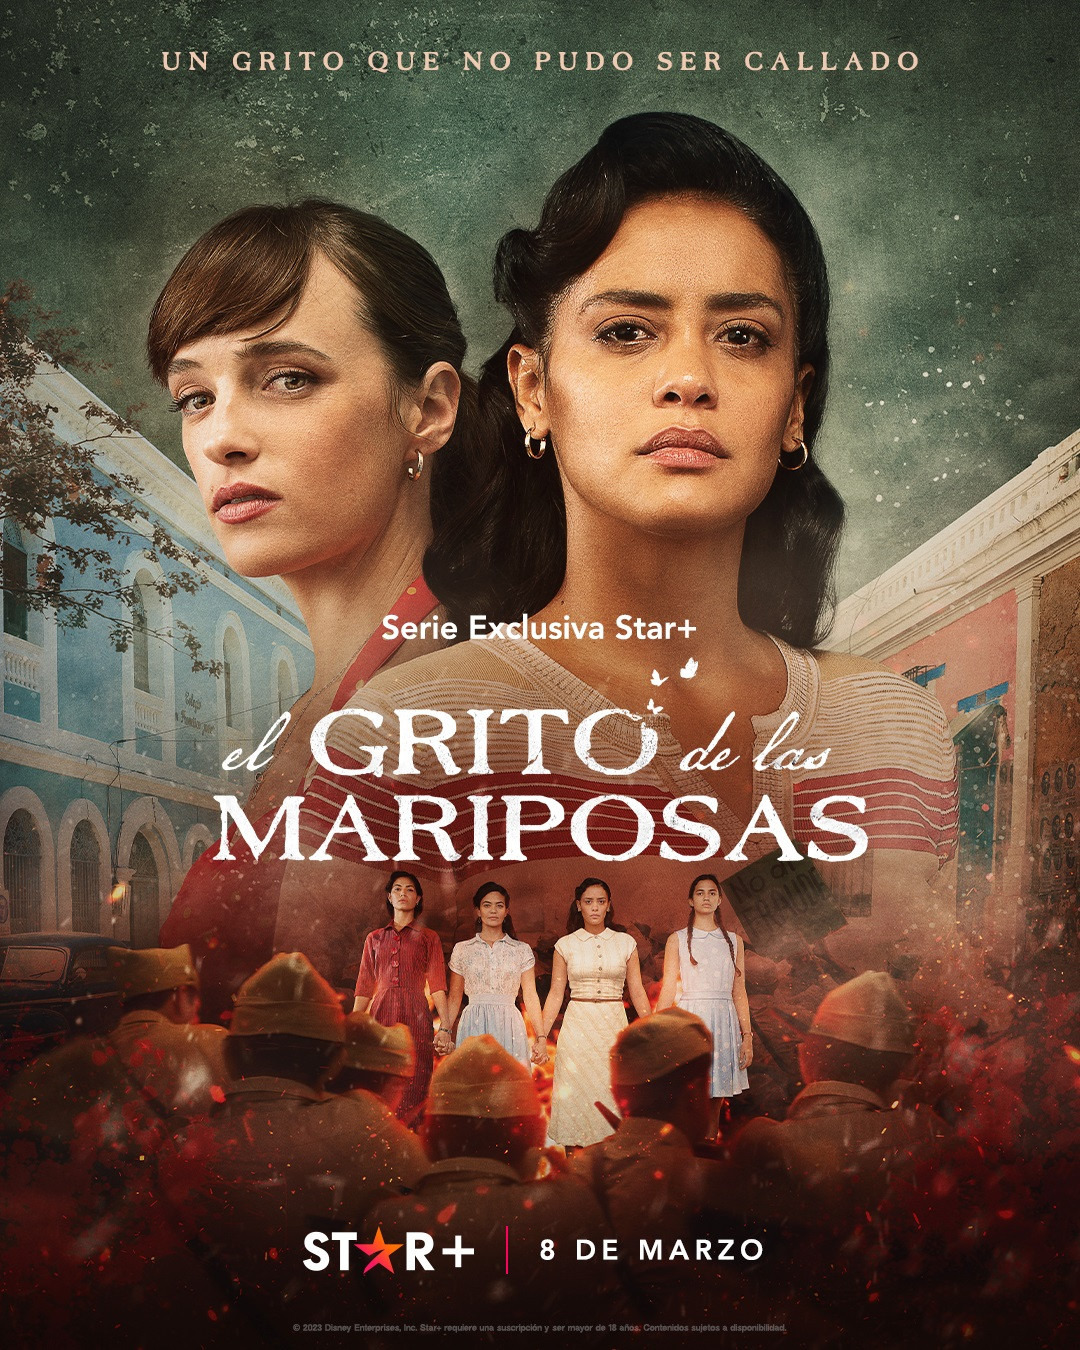 Extra Large TV Poster Image for El grito de las mariposas (#1 of 5)